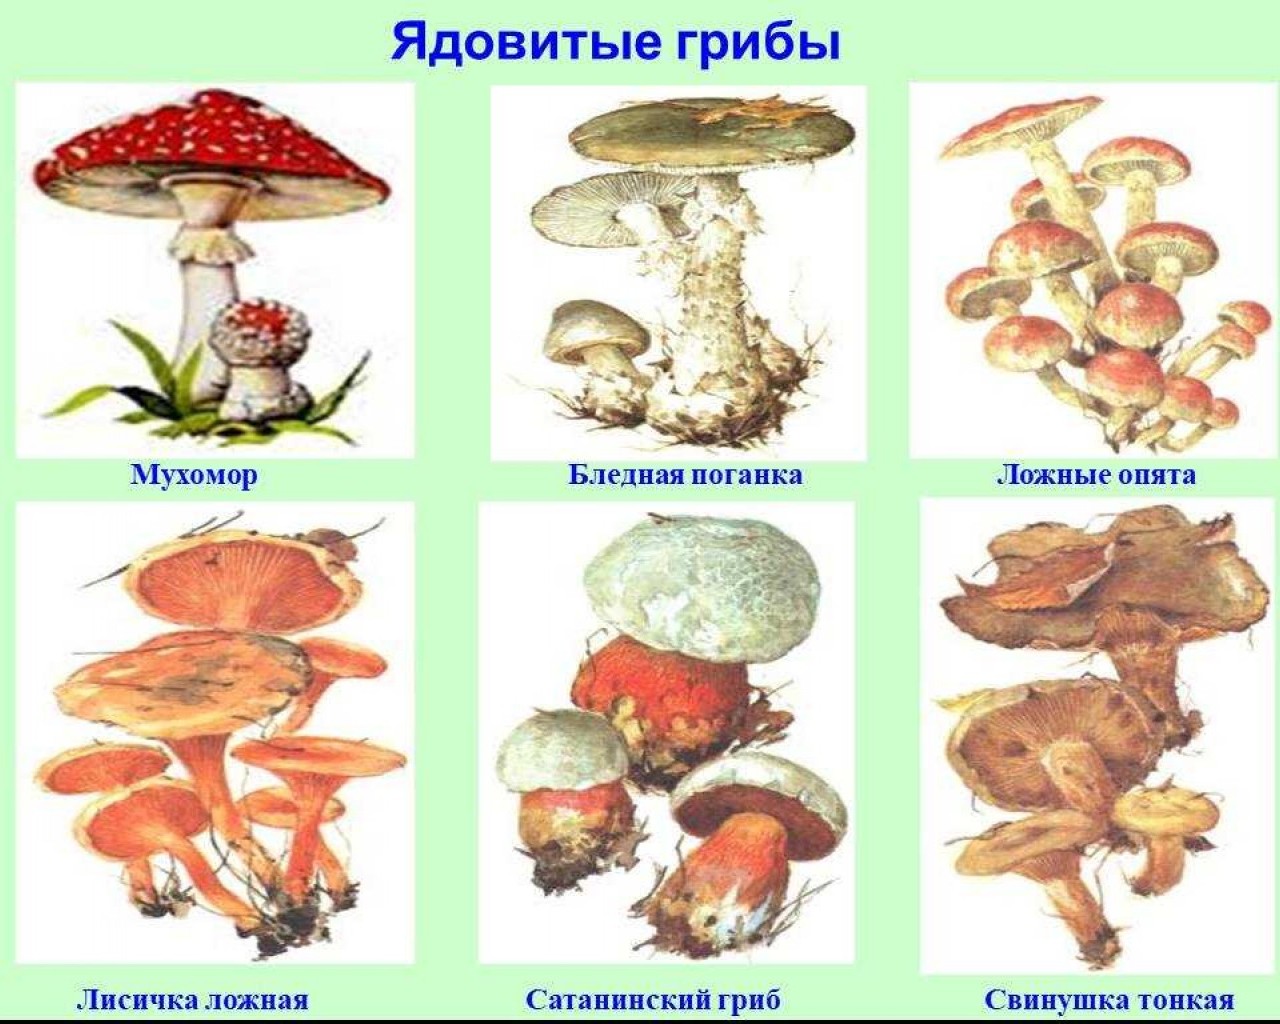 Опасные и несъедобные грибы - описания, виды и симптомы отравления